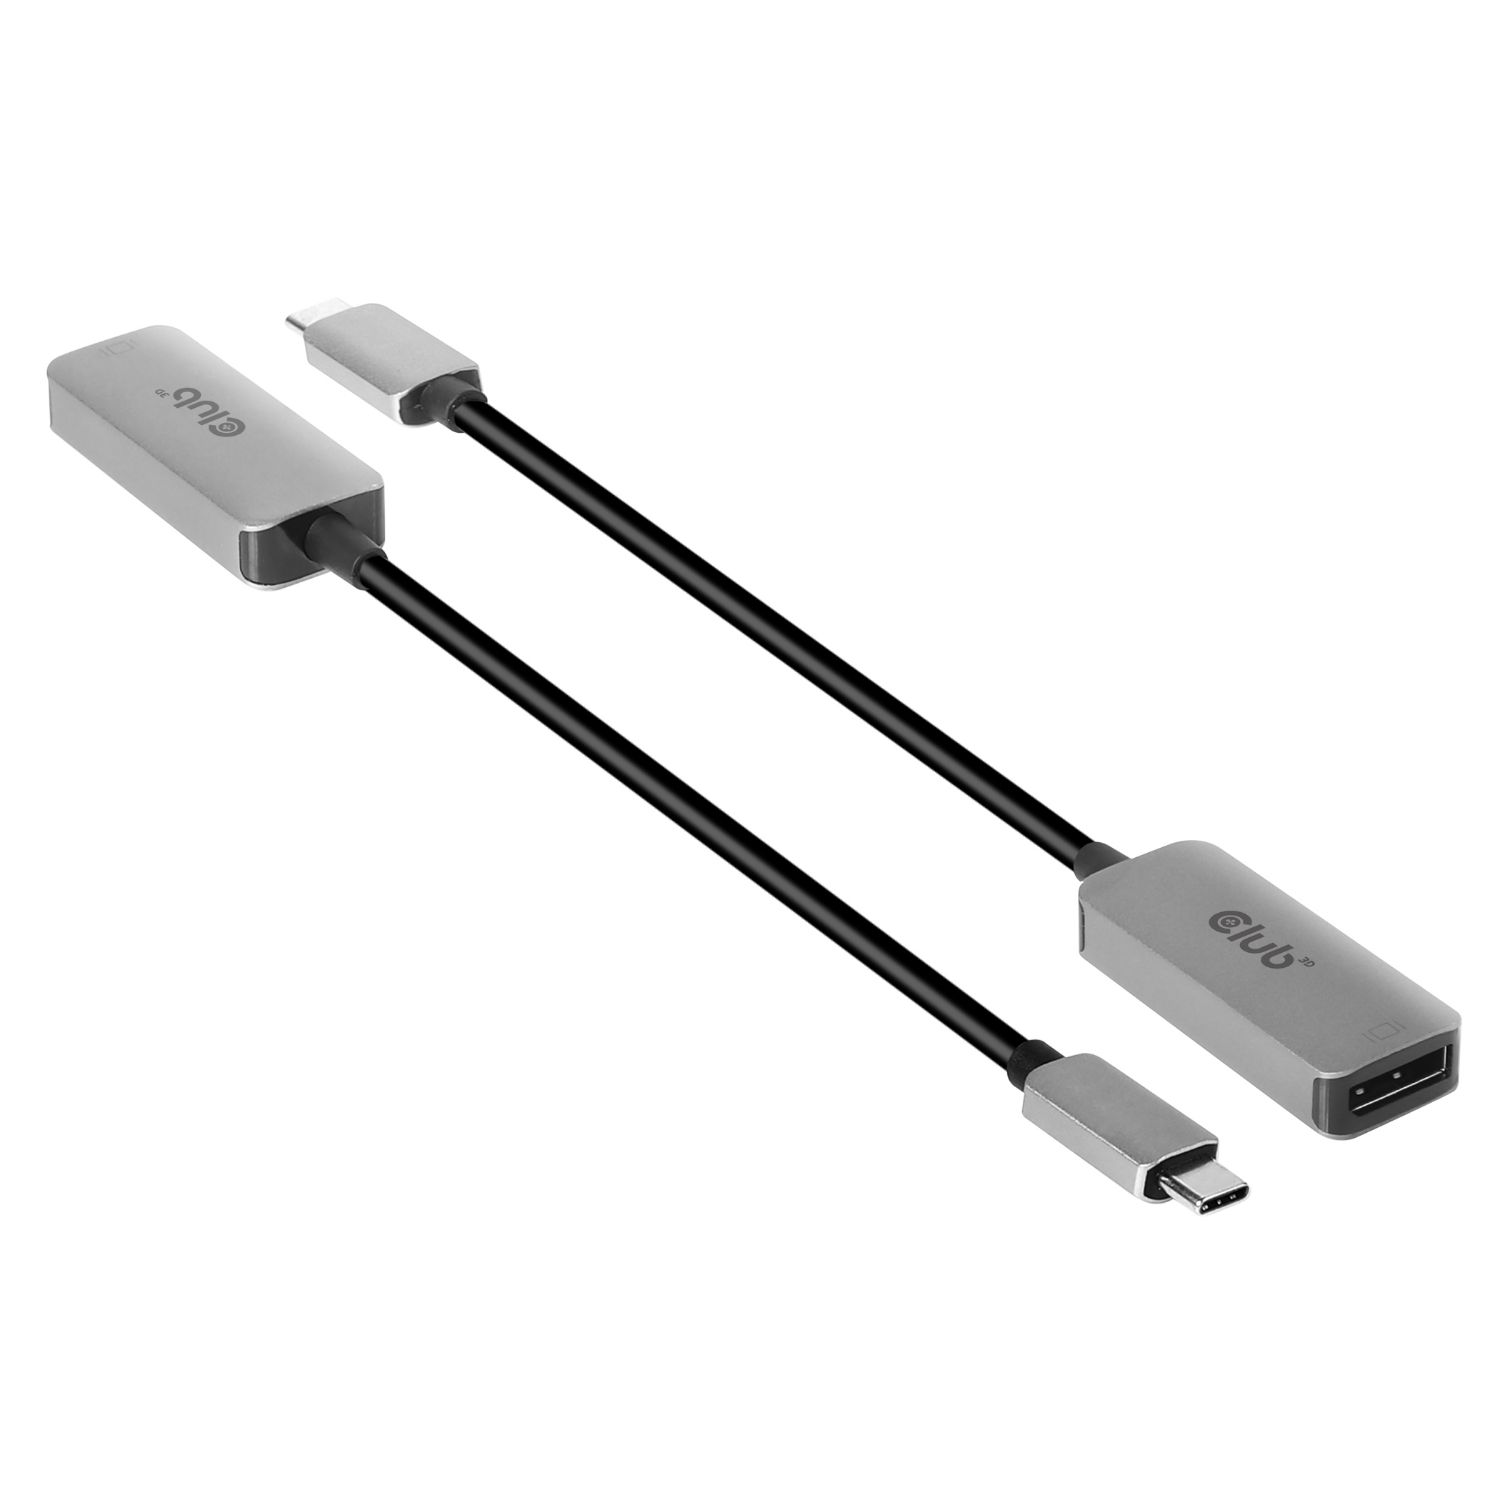 CAC-1567 - Adaptador Club3D USB-C a DisplayPort 1.4 8K60Hz (CAC-1567)